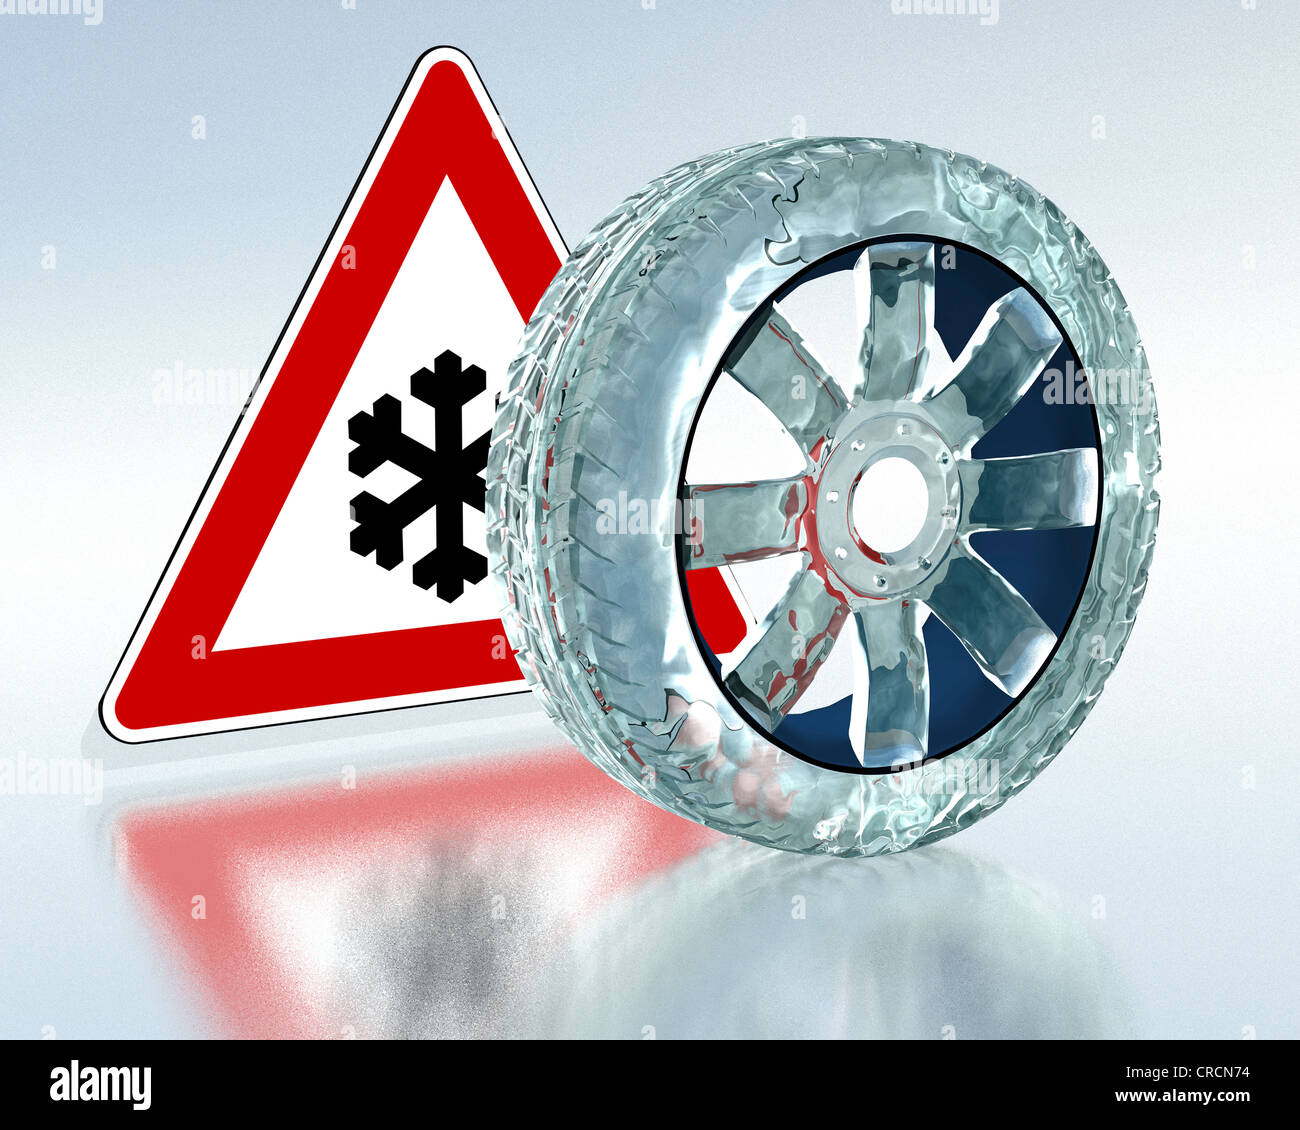 Pneu de voiture fait de glace avec un panneau d'avertissement de trafic  pour la neige et les routes verglacées, image symbolique pour l'utilisation  obligatoire des pneus d'hiver Photo Stock - Alamy